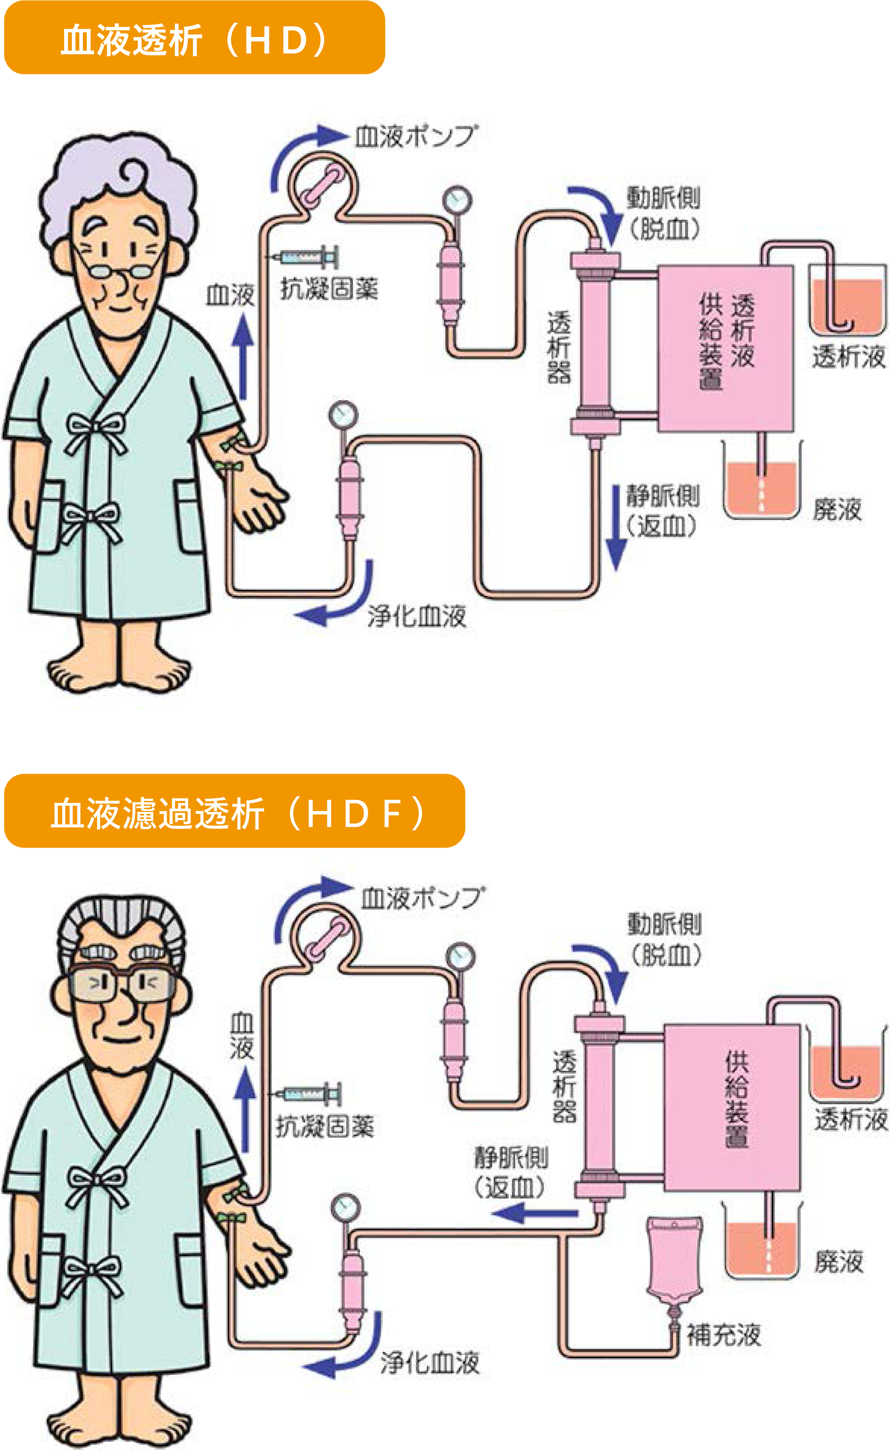 血液透析（HD） 血液濾過透析（HDF）